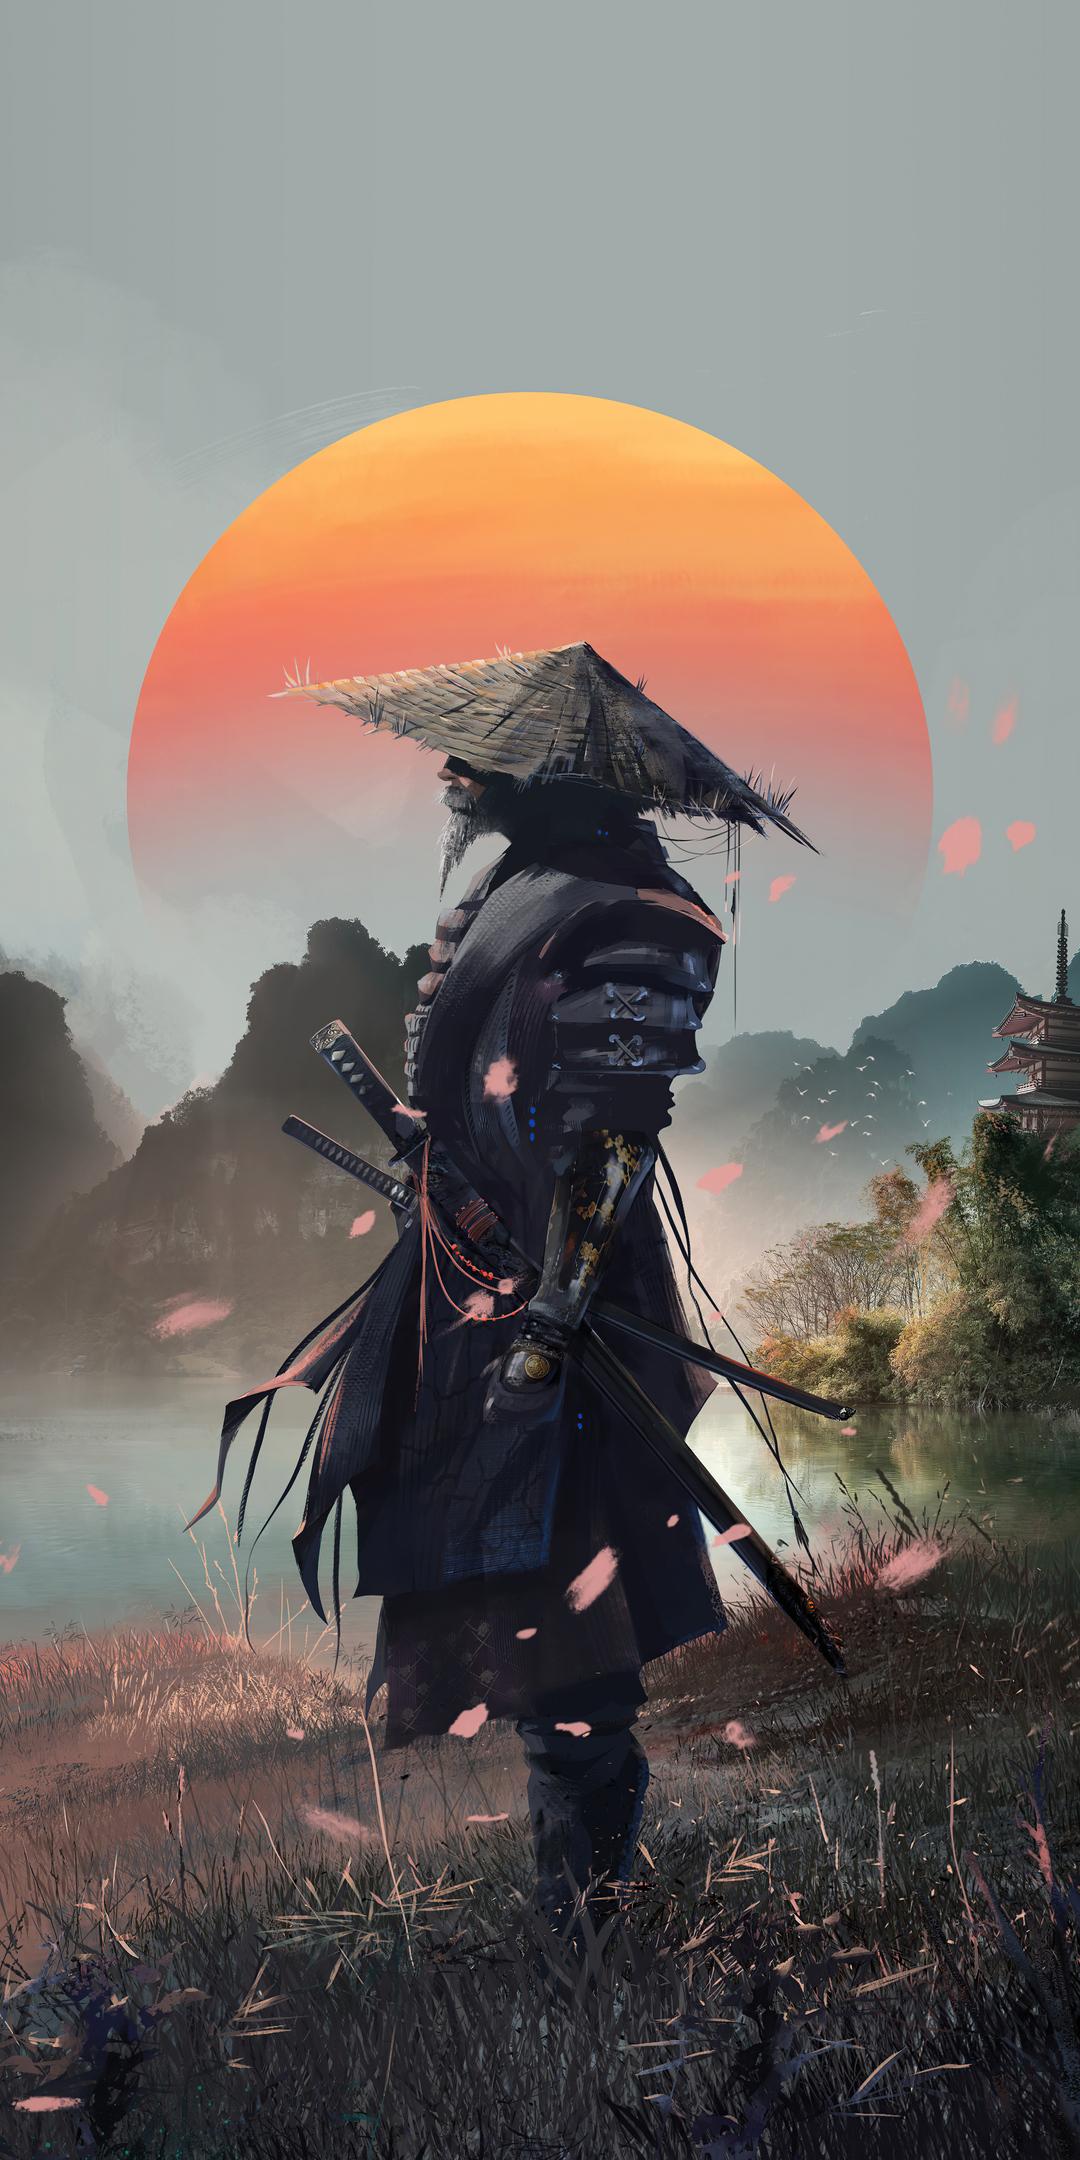 Chào mừng đến với bộ sưu tập hình nền samurai 4k, nơi bạn sẽ tìm thấy những bức ảnh tuyệt đẹp của những tay kiếm với tinh thần kiên cường và quyết tâm bảo vệ cảnh giới của mình. Nhanh chóng tải xuống và thay đổi hình nền để trải nghiệm không gian nghệ thuật của Nhật Bản, đắm mình vào thế giới Samurai đầy màu sắc và kinh ngạc.